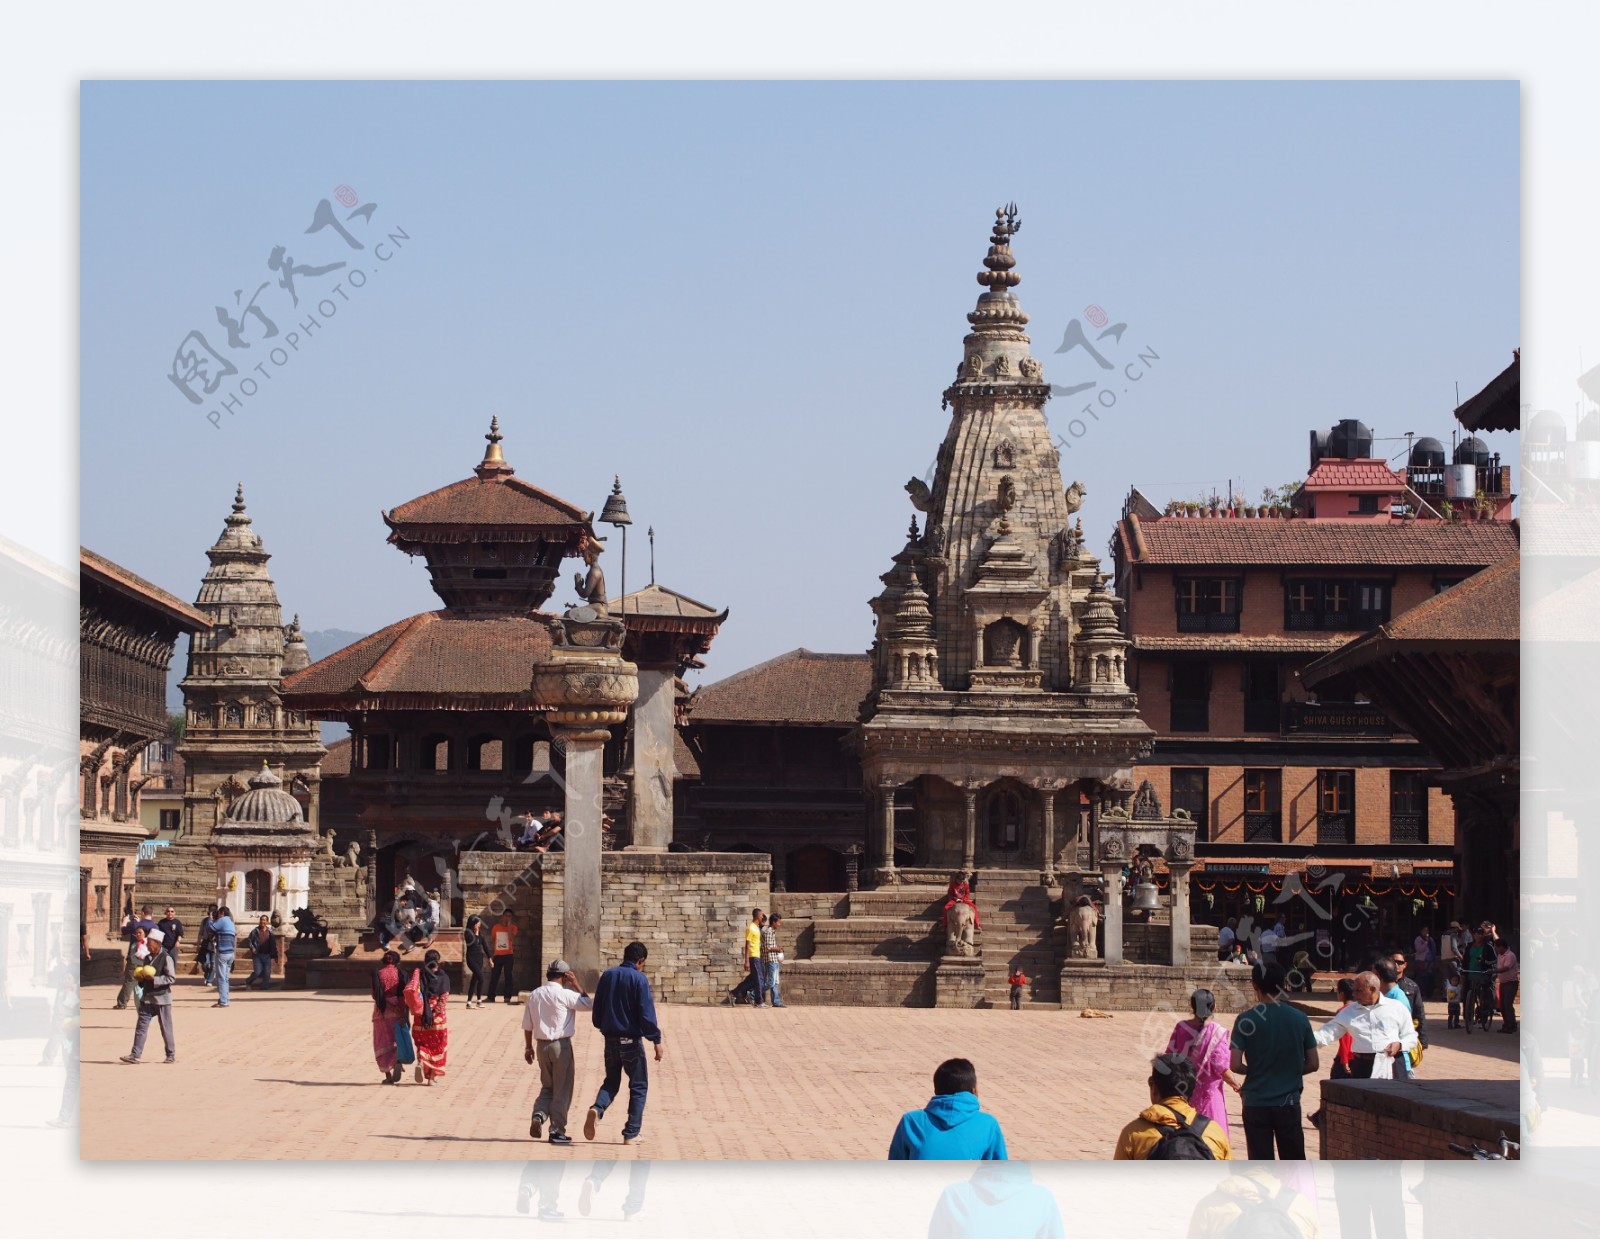 尼泊尔建筑风情